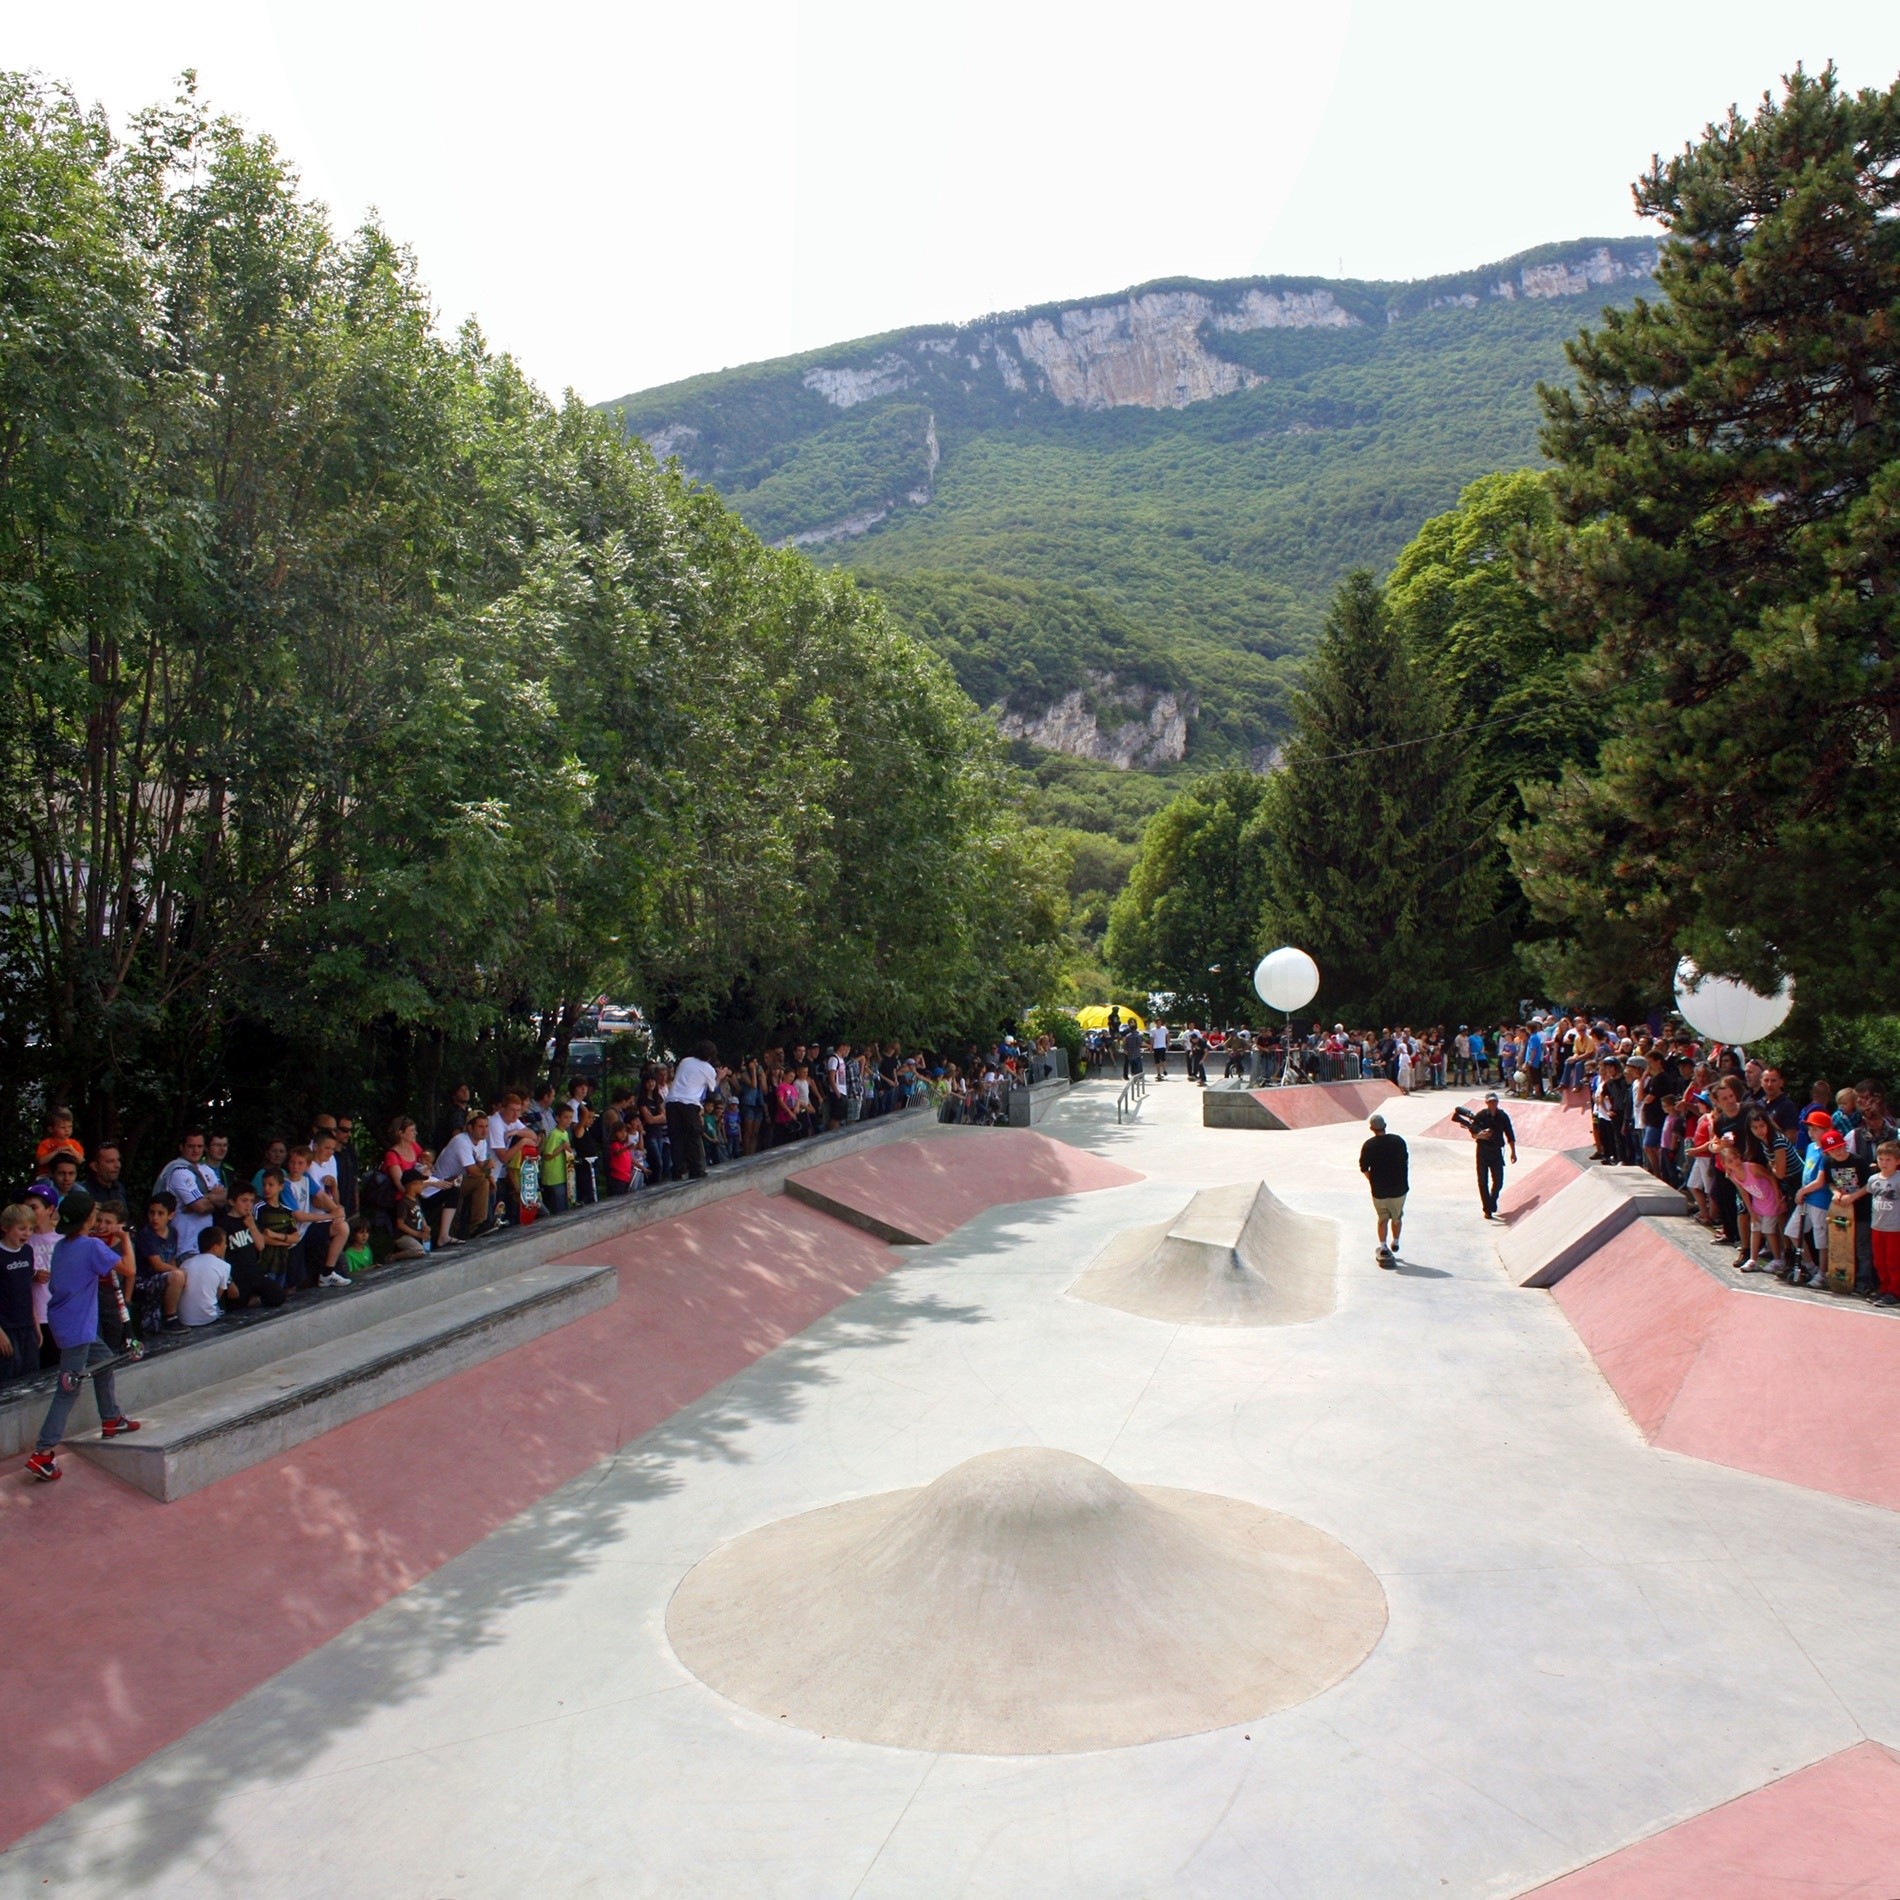 Fontaine skatepark